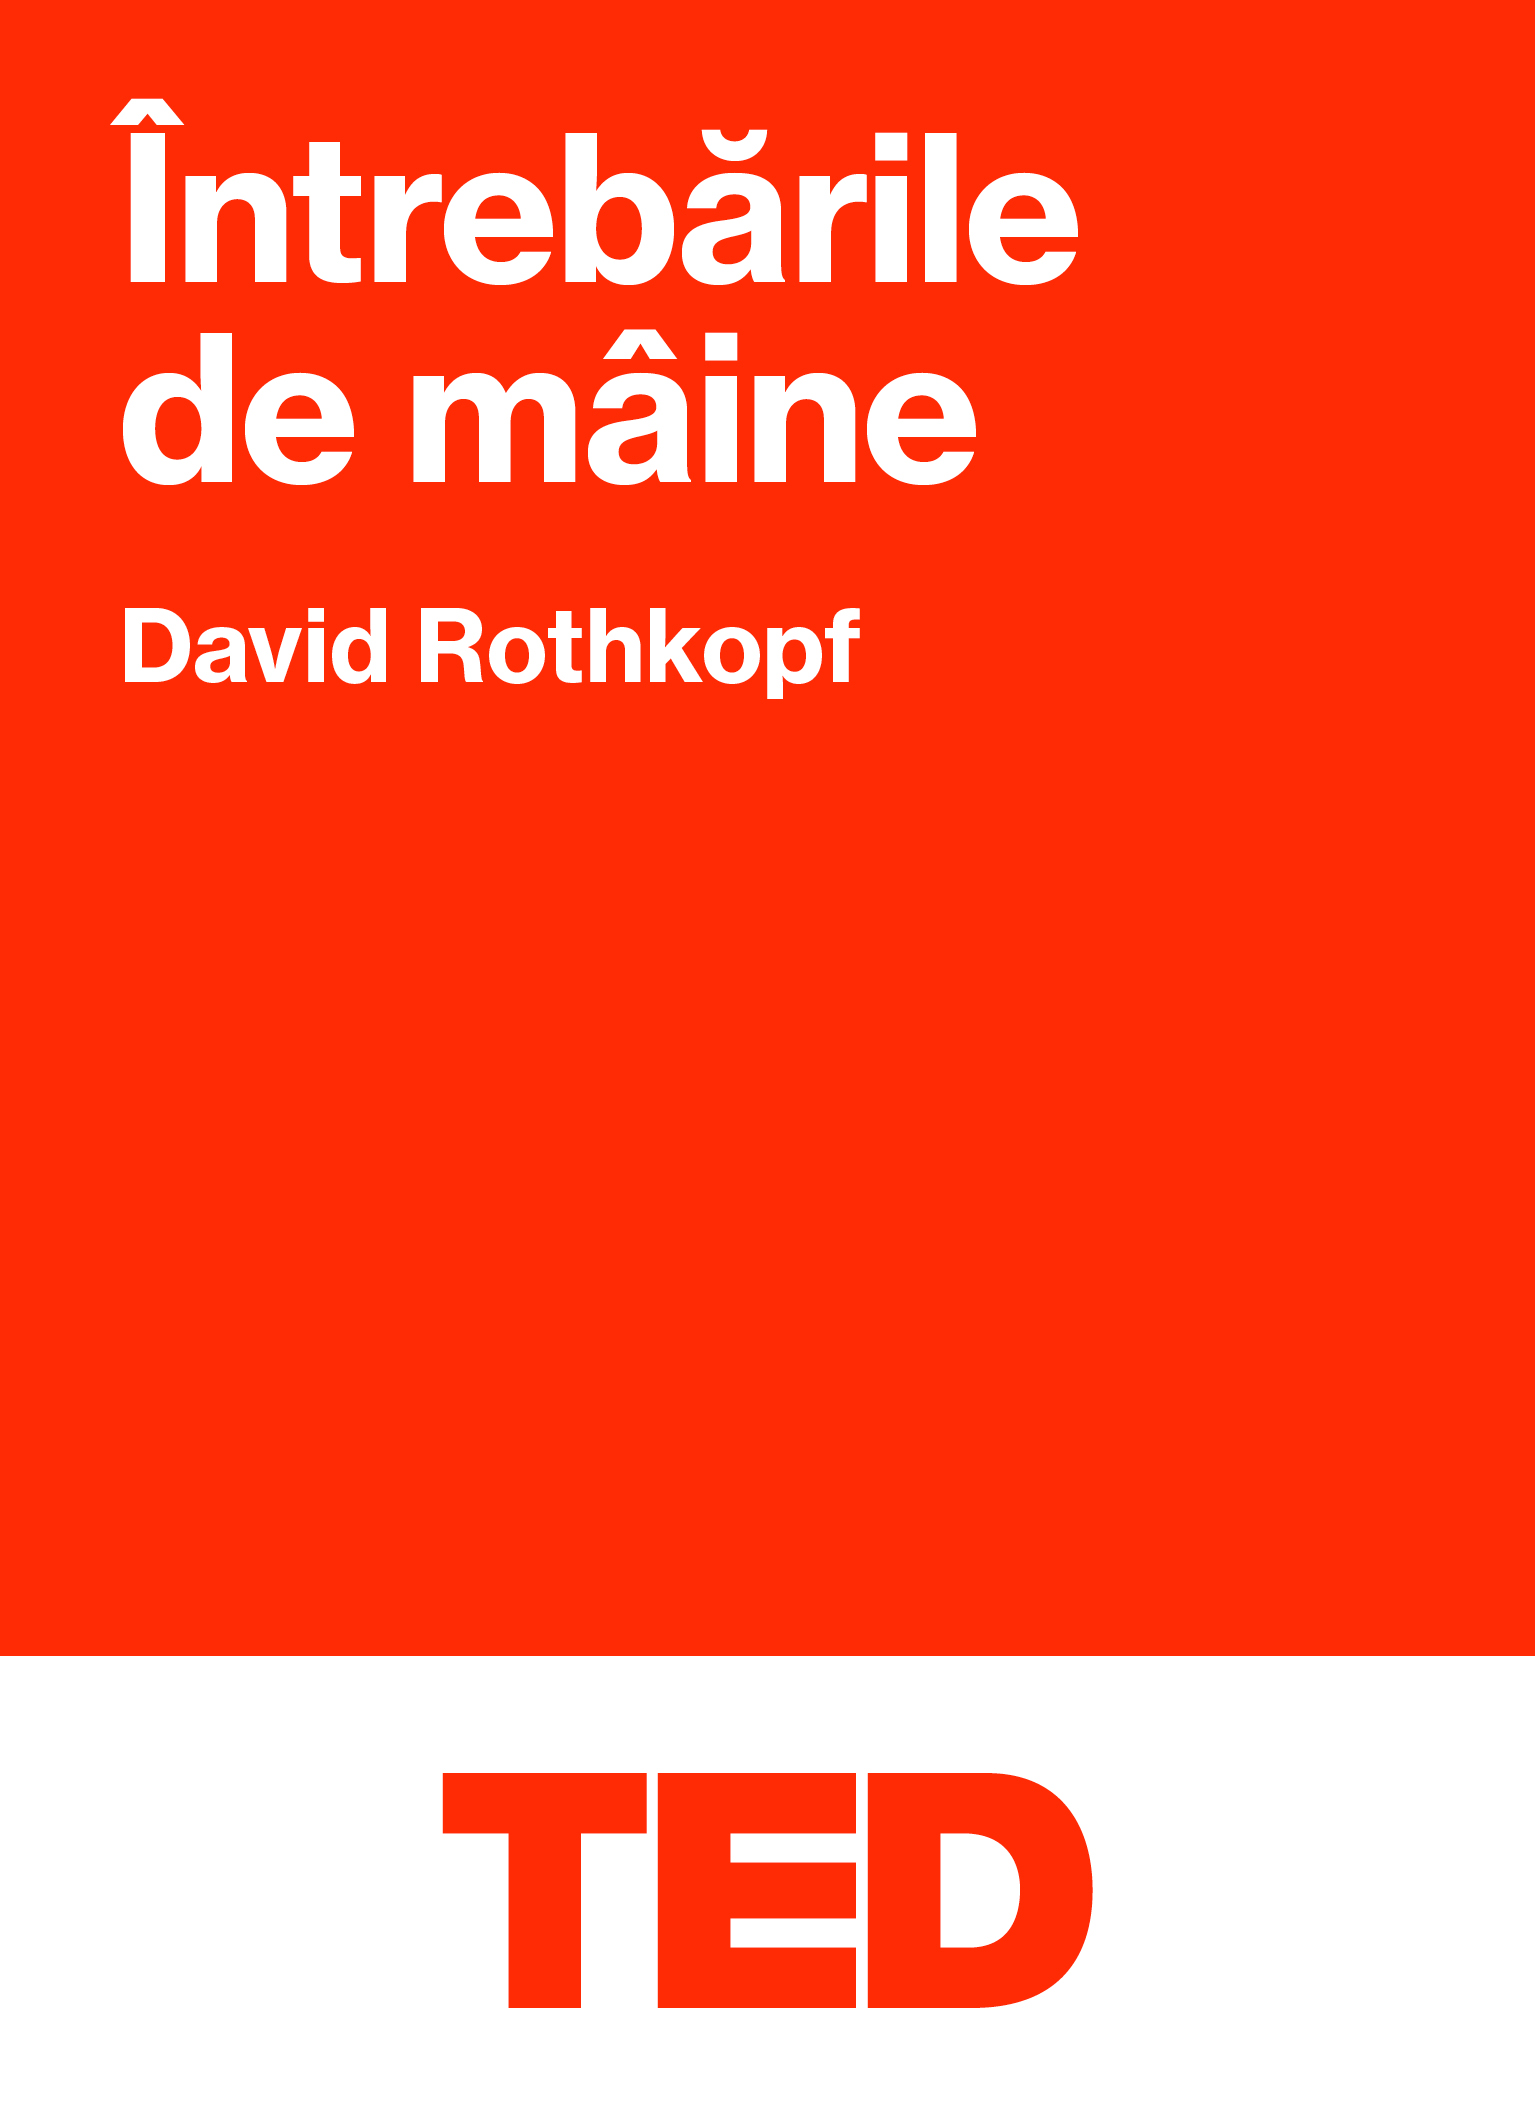 PDF TED – Intrebarile de maine | David Rothkopf Black Button Books Business si economie